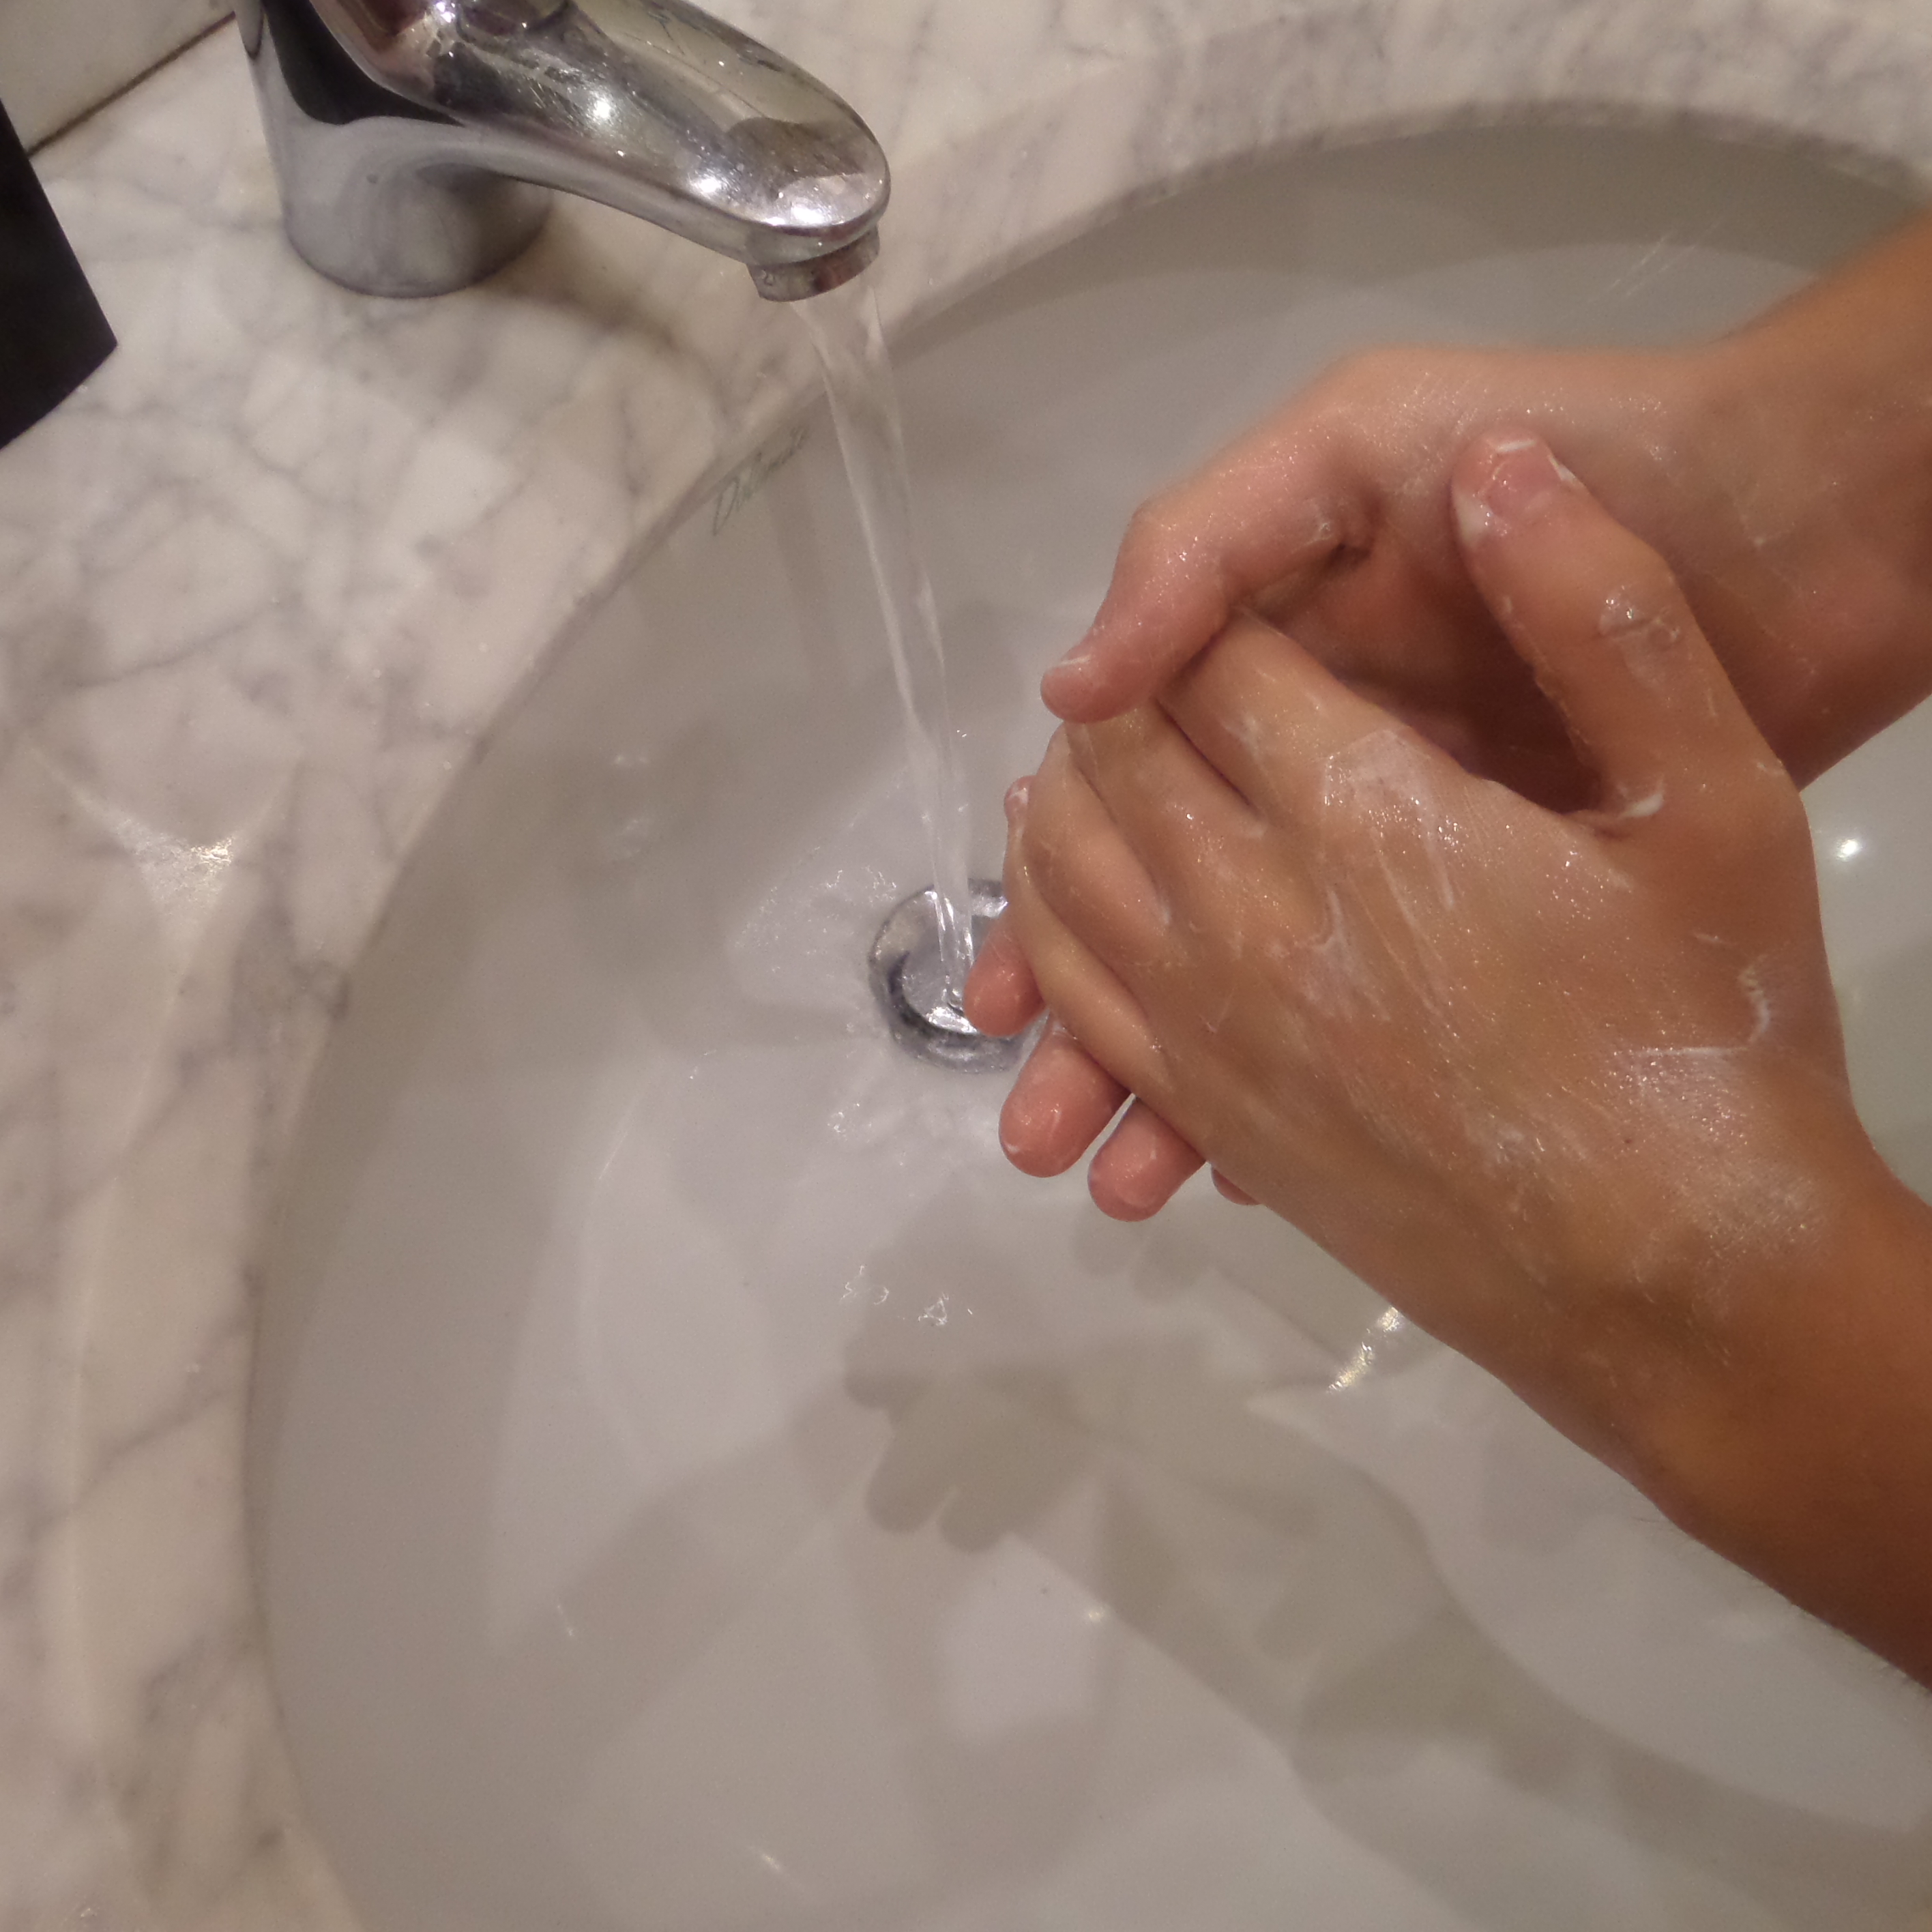 Epidemia influenzale 2017-2018, tra le norme raccomandate per limitare la diffusione il lavaggio delle mani con acqua e sapone